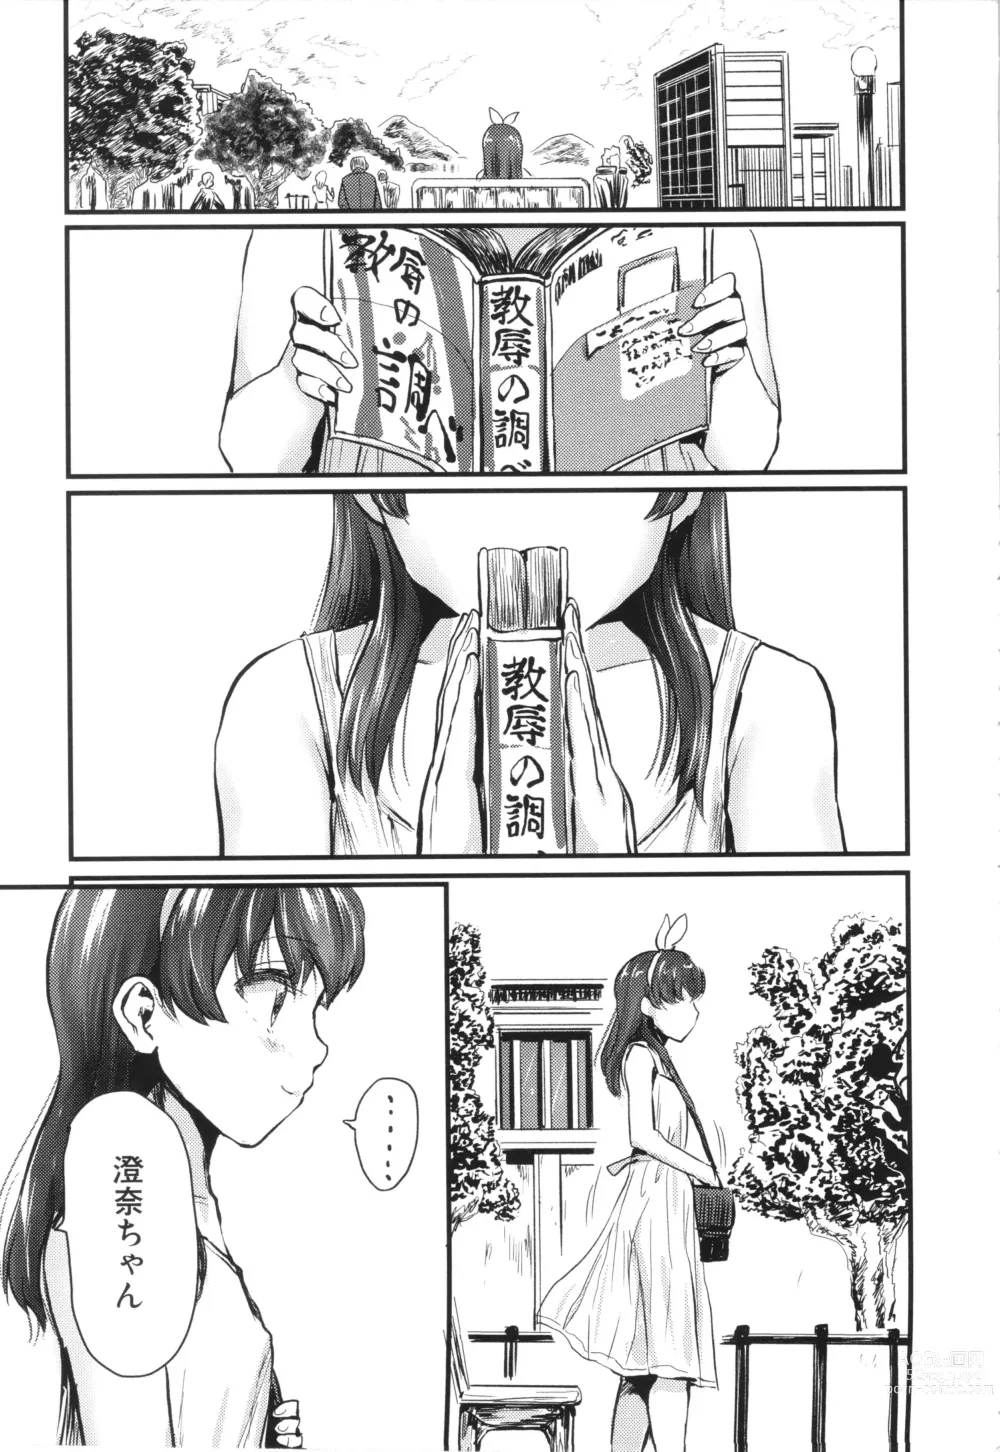 Page 25 of manga Mesu Kobi koubi Osu Bou-sama-tachi ni Kansha no Koshi Furi